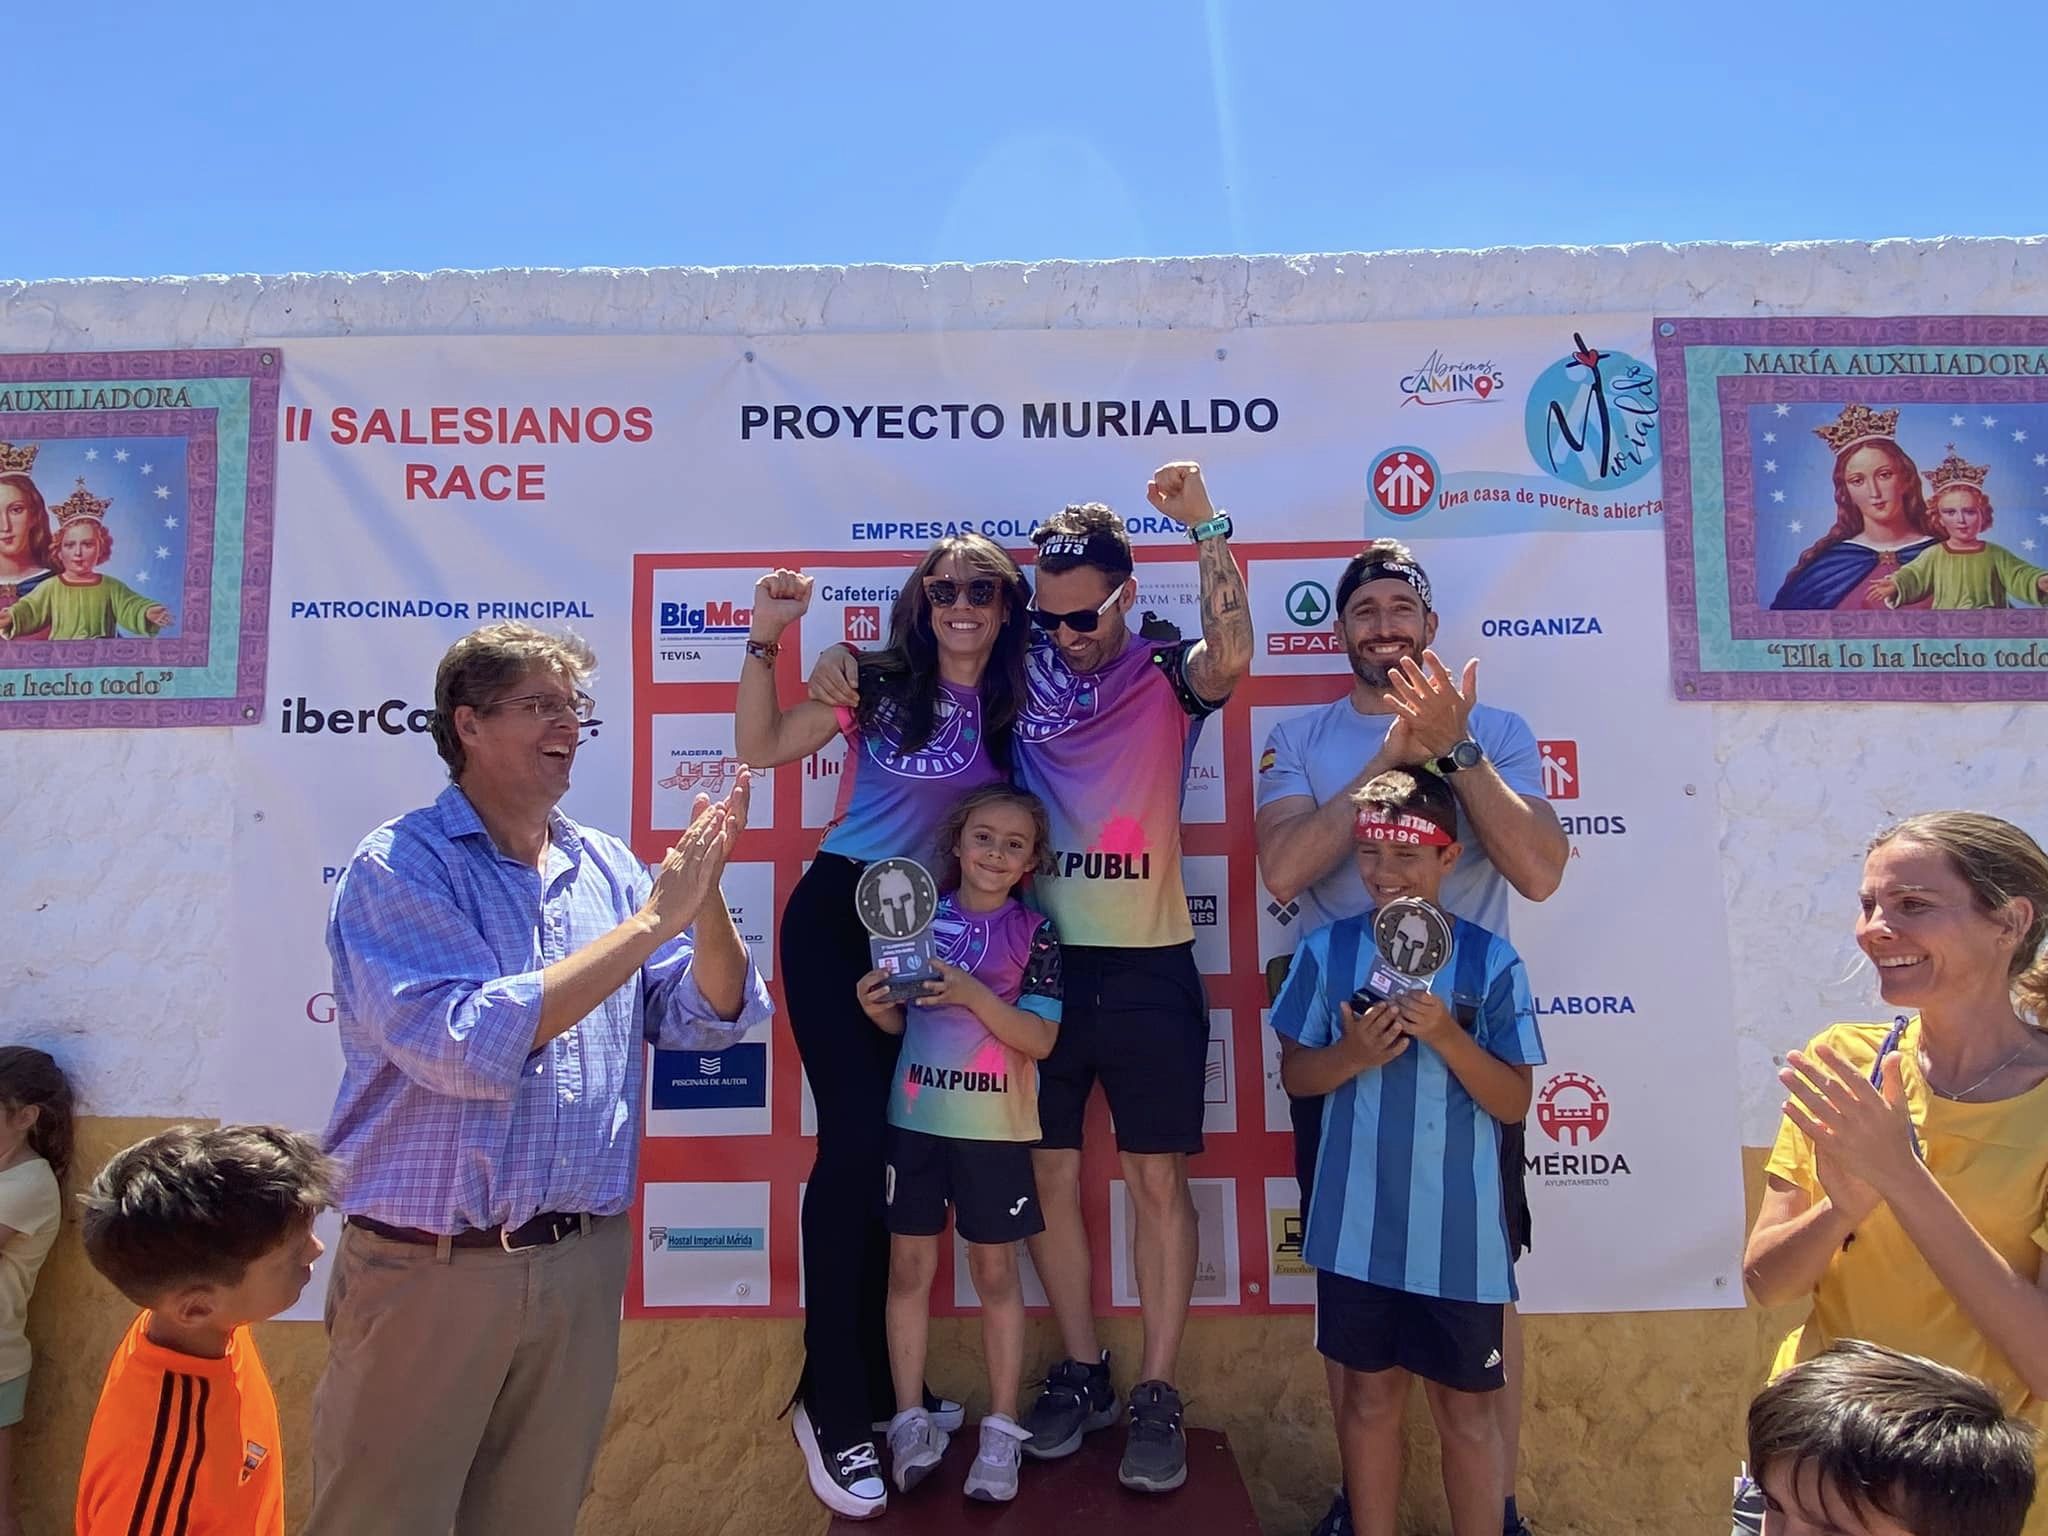 Salesianos Mérida organiza una carrera solidaria a beneficio de Murialdo